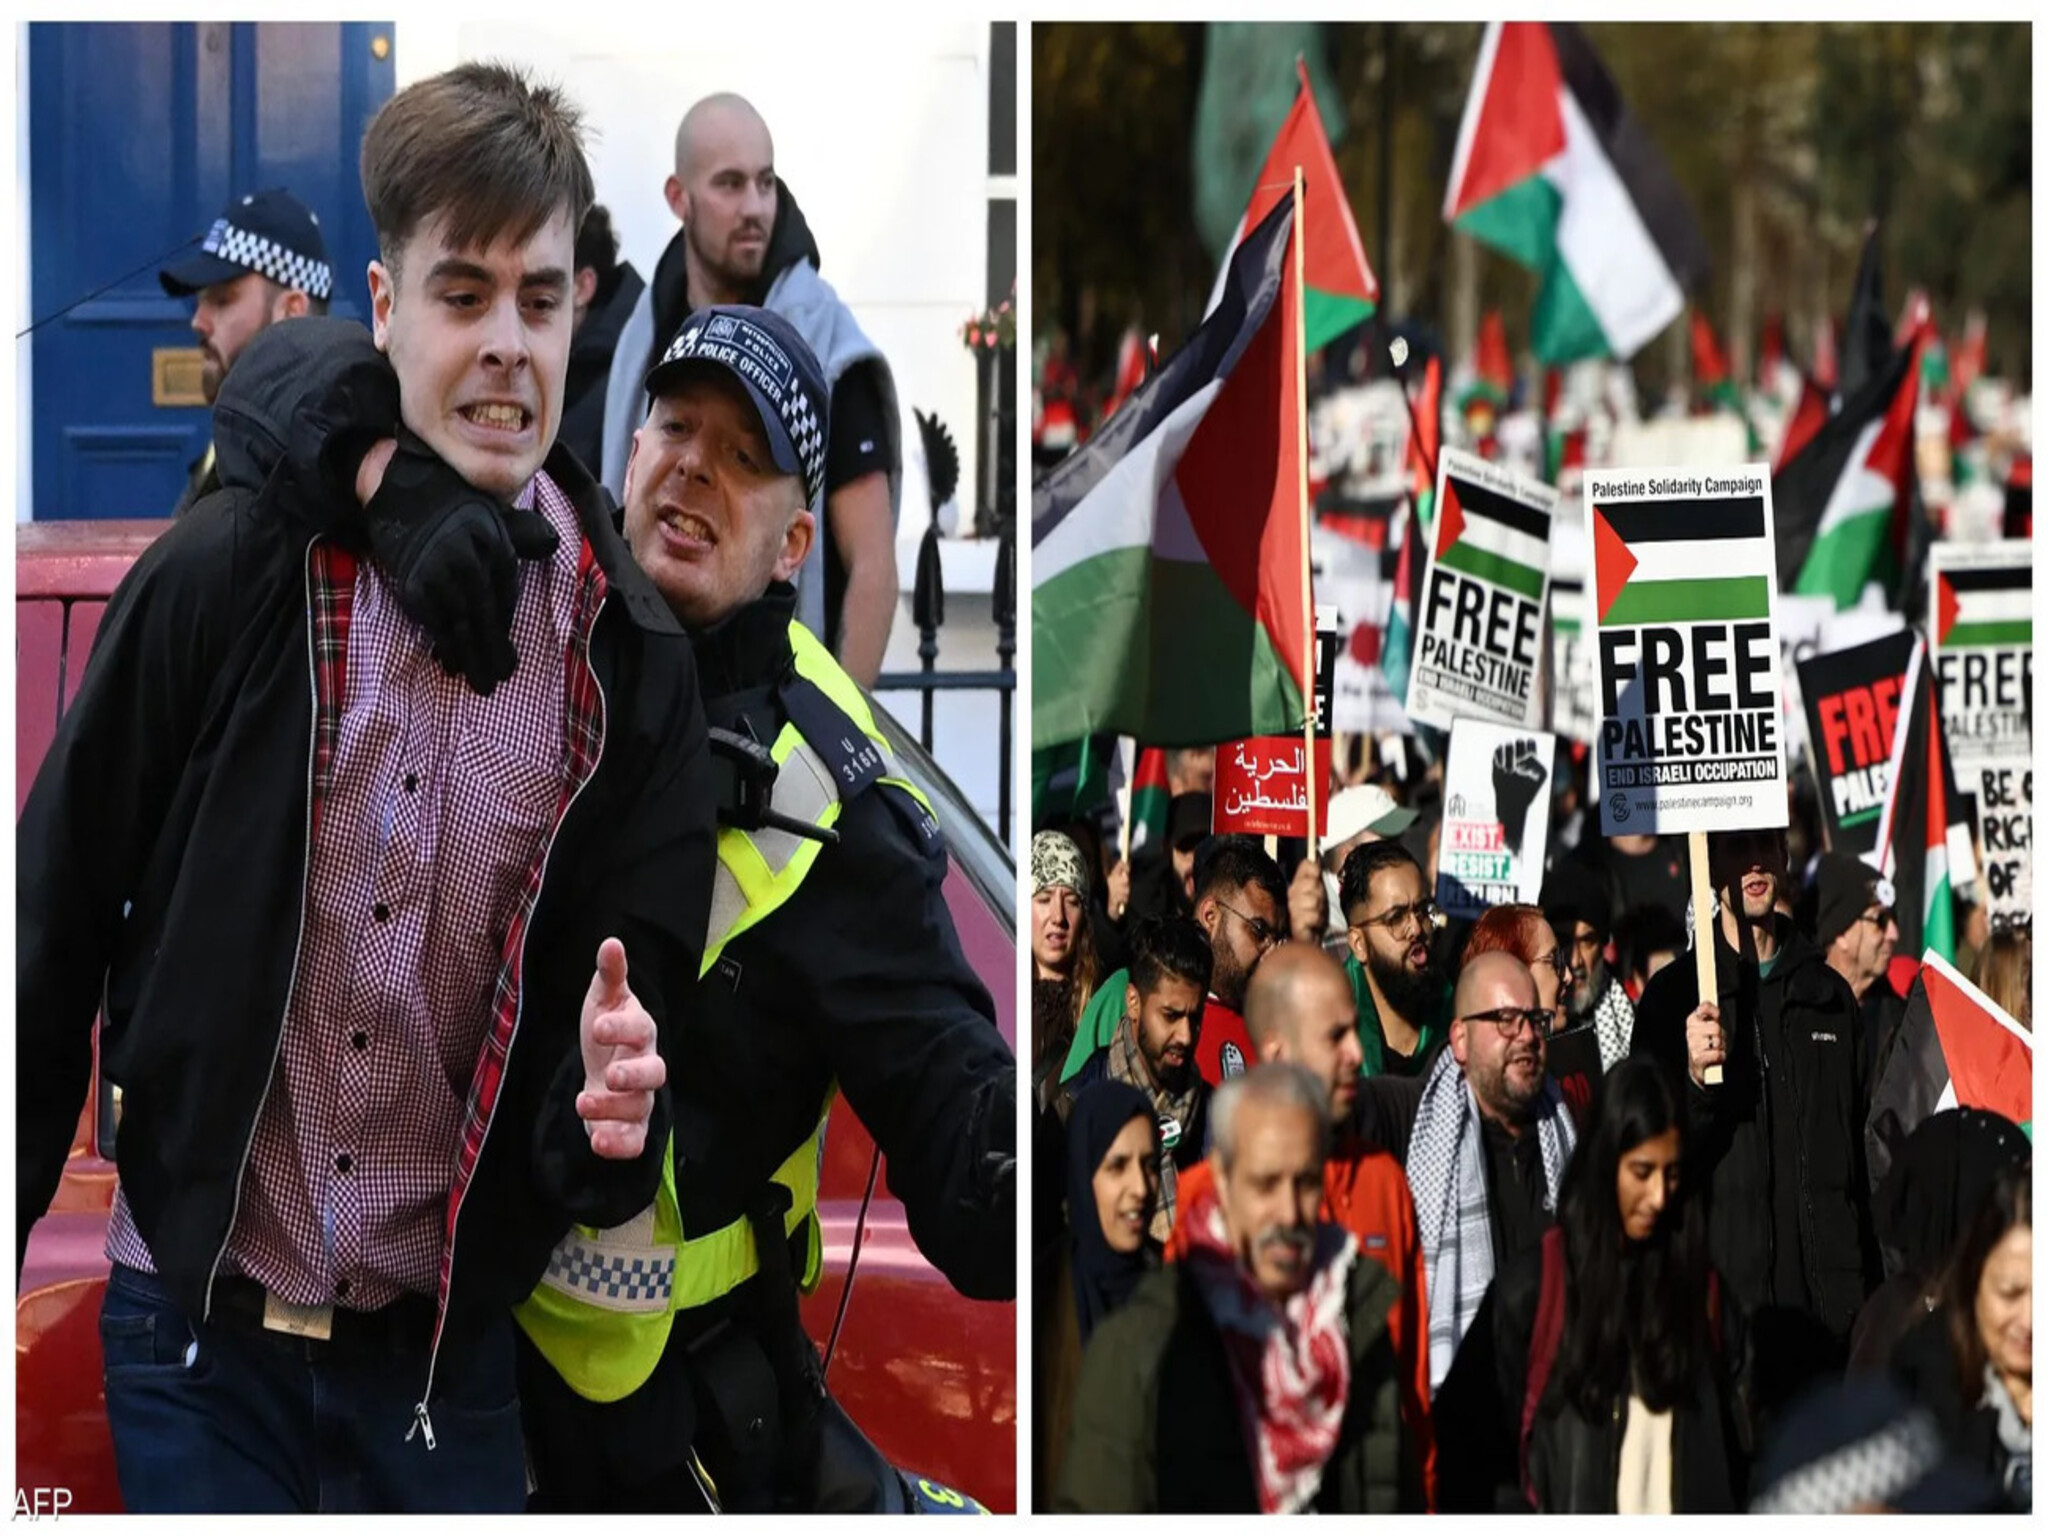  مظاهرات سلمية هائلة وسط العاصمة البريطانية لندن وشغب اليمنيين في مواجهتهم